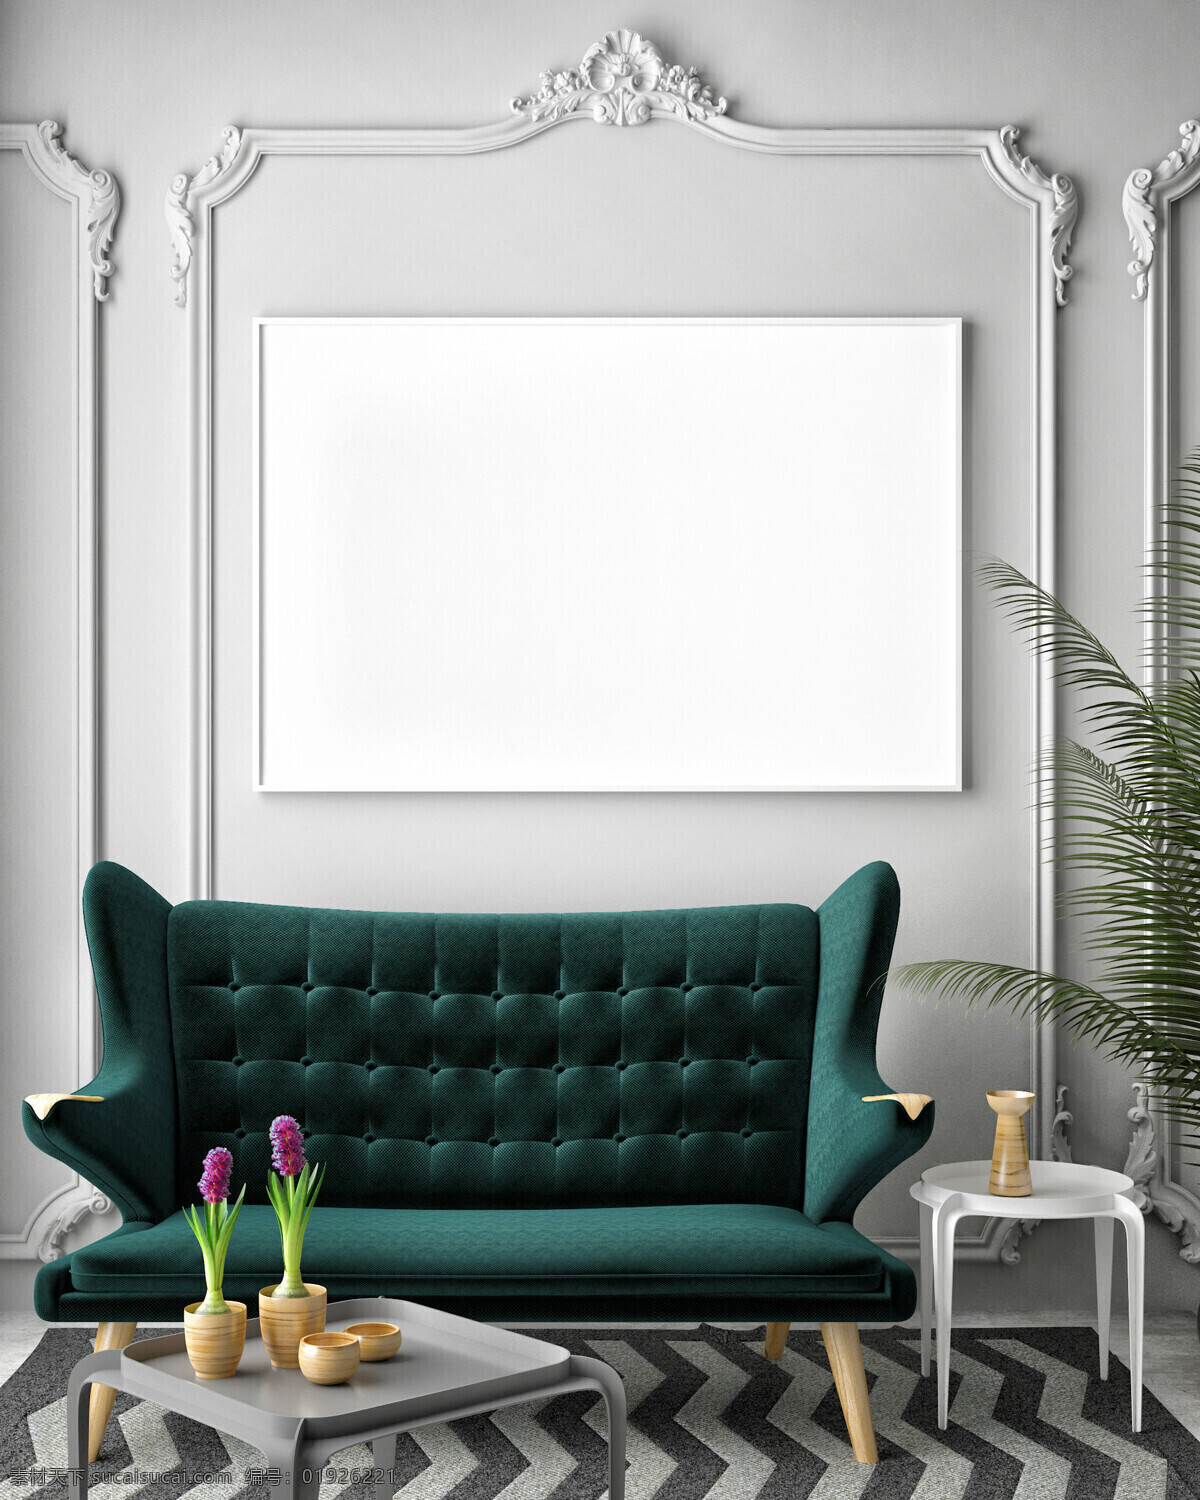 唯美 3d 立体 家居装饰 相框 空白 空白相框 装饰物 壁挂相框 空白壁挂相框 3d设计